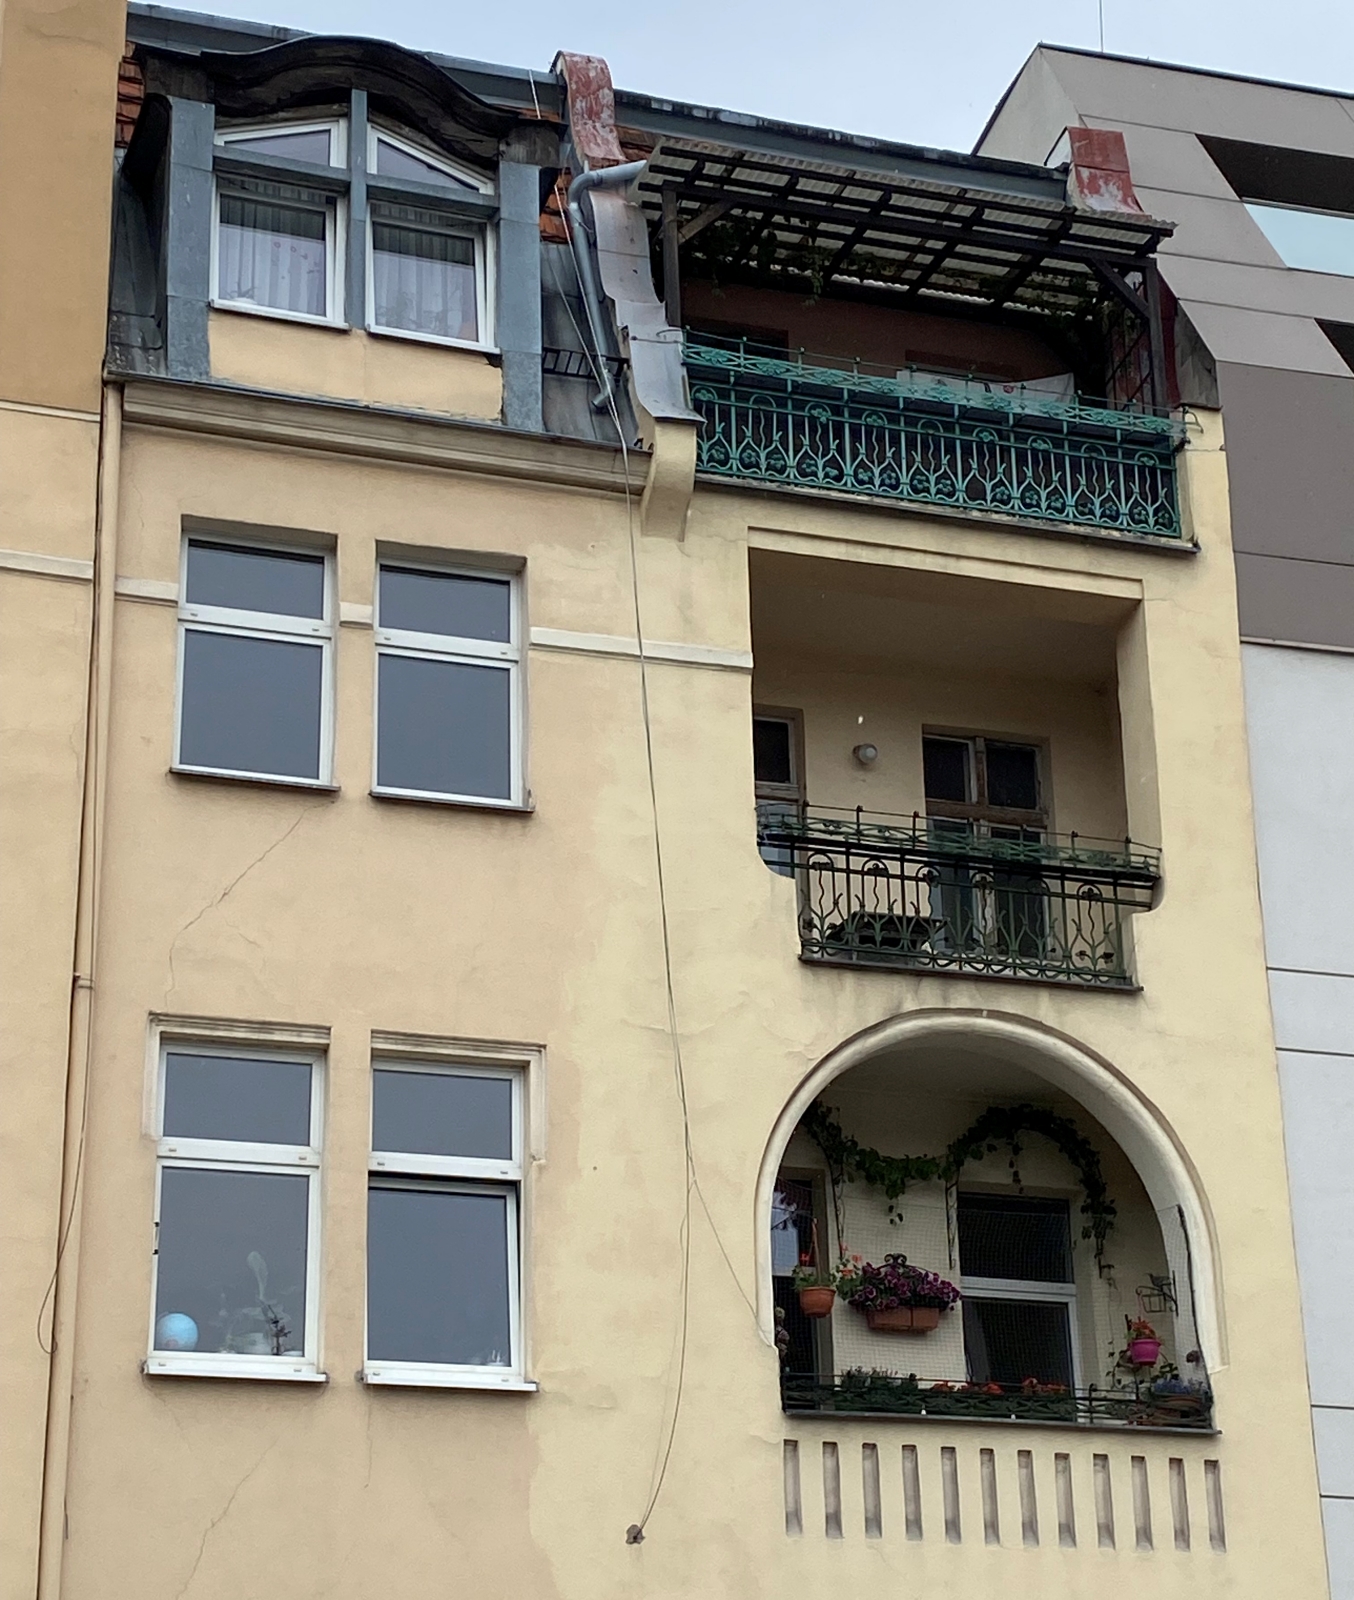 Nowe okna w starych budynkach